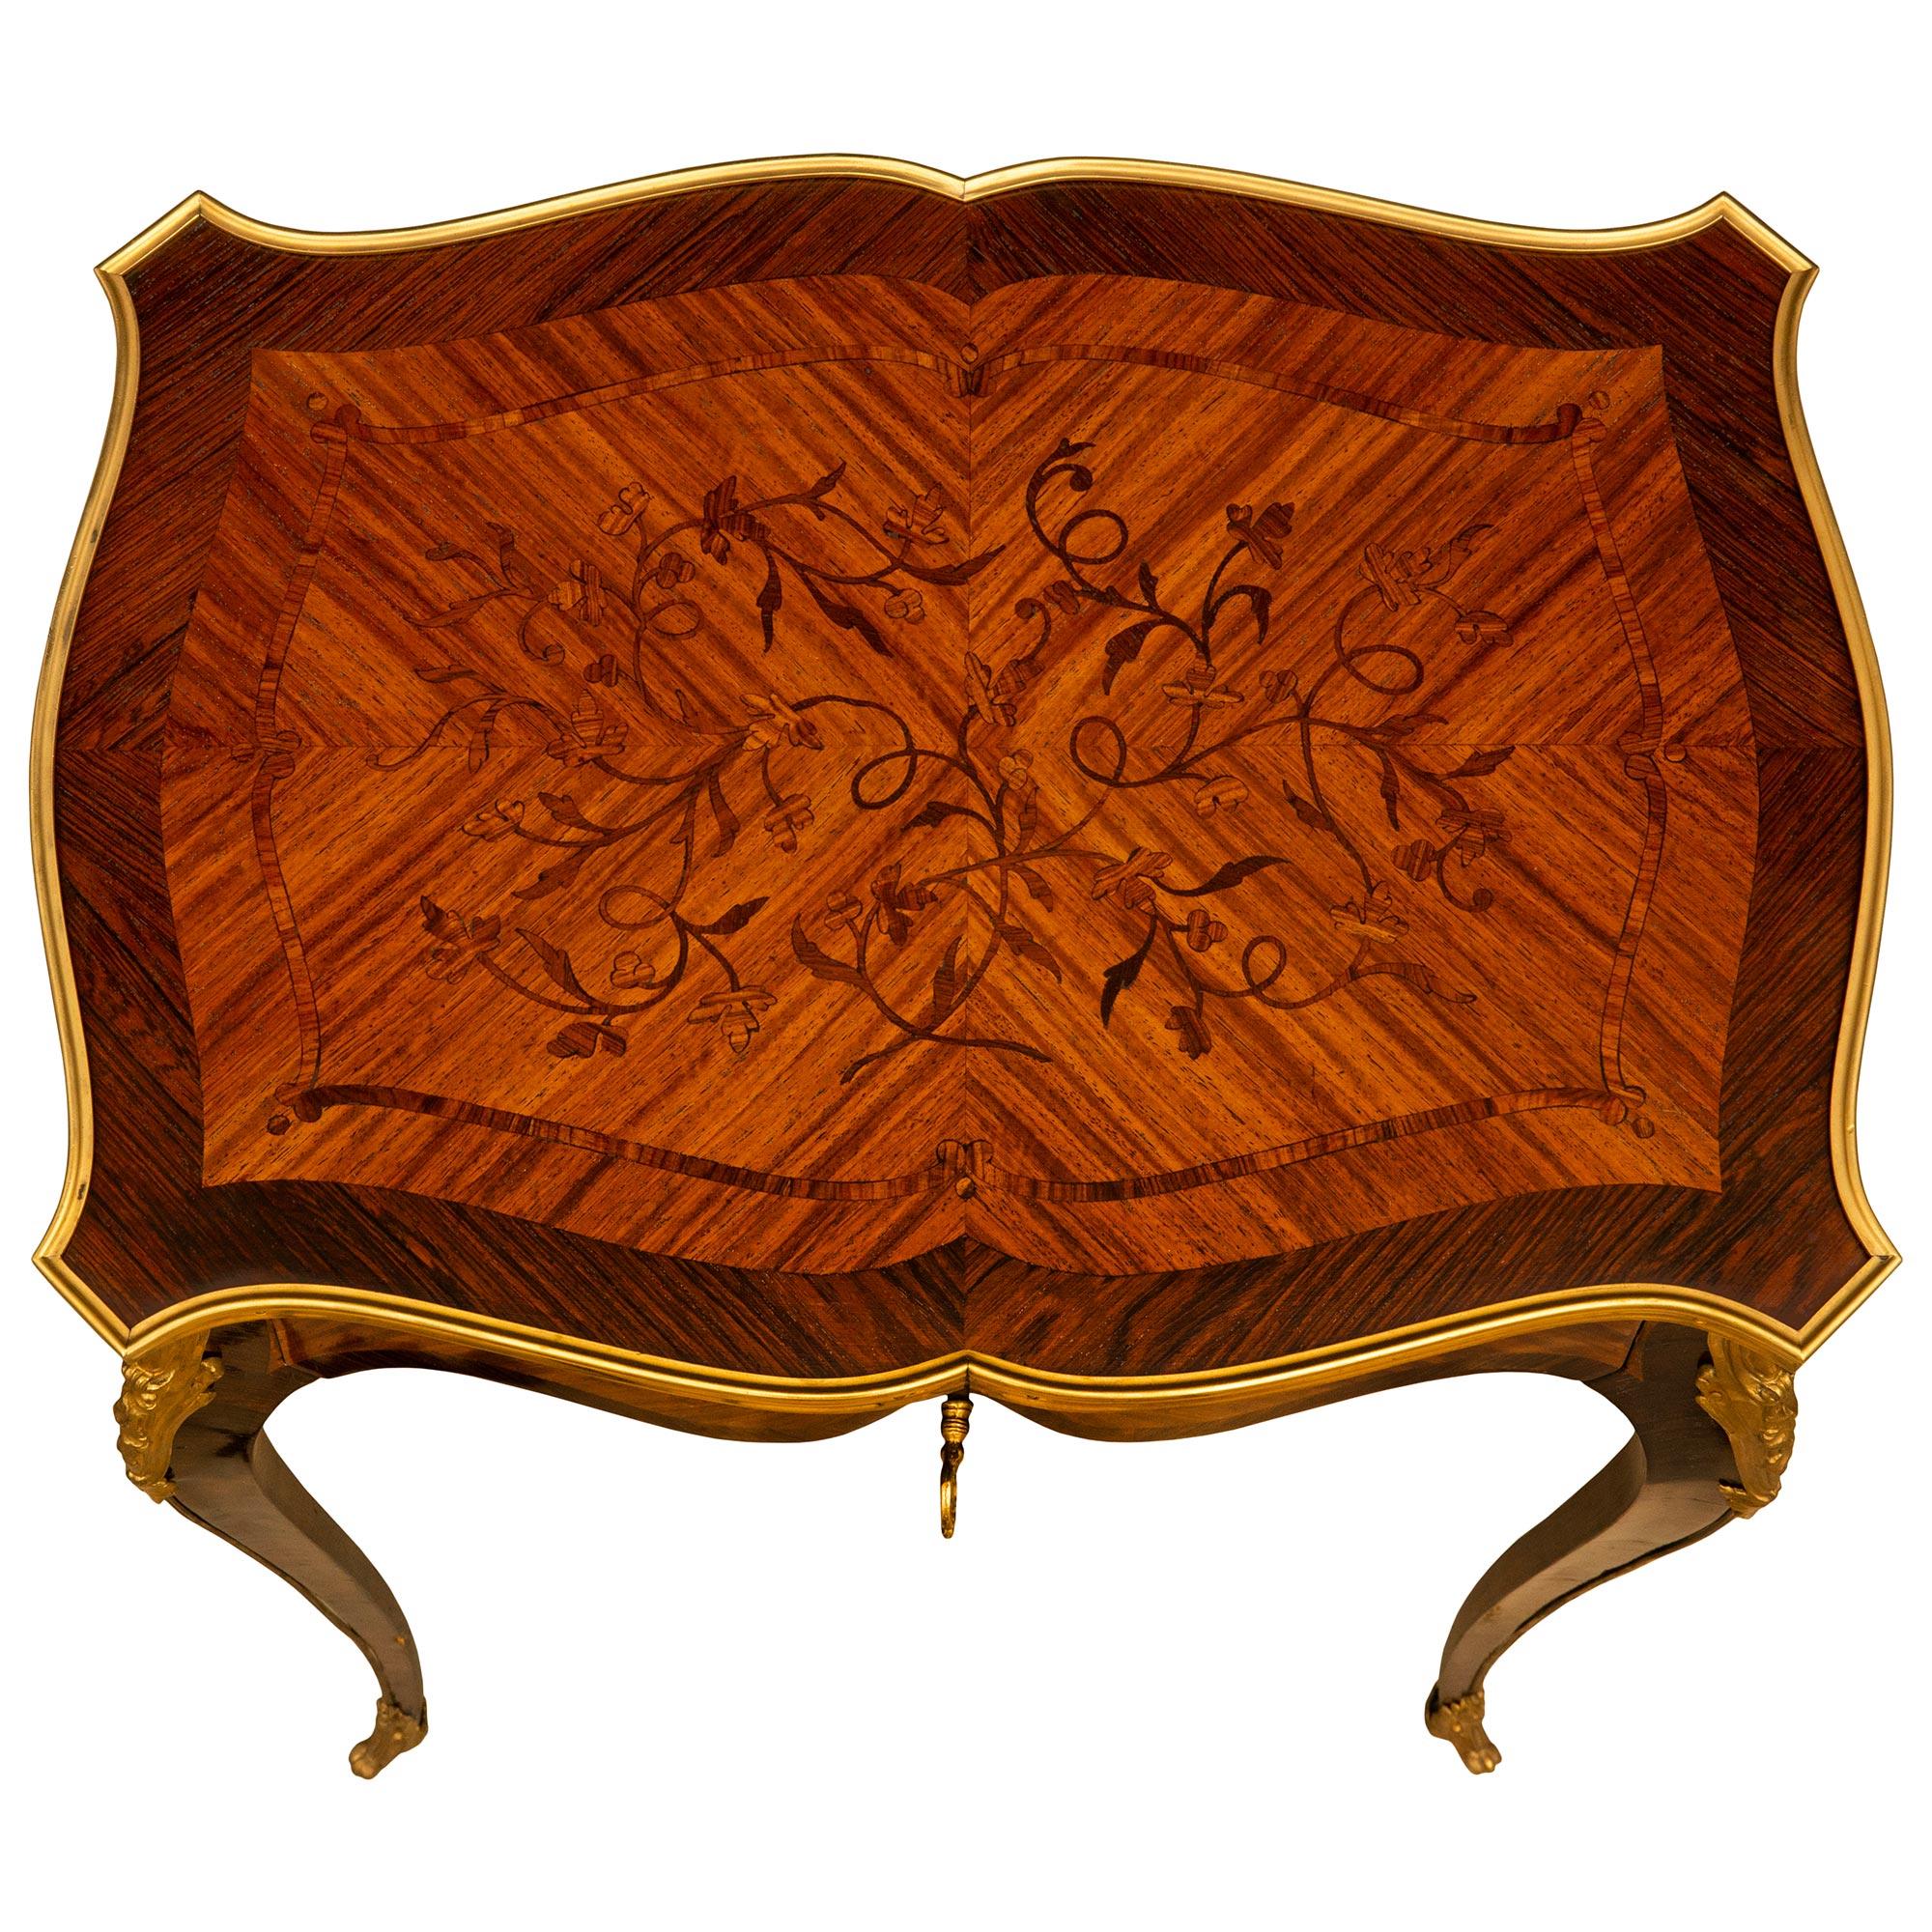 Superbe et élégante table d'appoint française du milieu du 19ème siècle, de style Louis XV, en bois de roi et bois de tulipe. La table de forme festonnée est surélevée par des pieds cabriole allongés, décorés de chutes en bronze doré se terminant